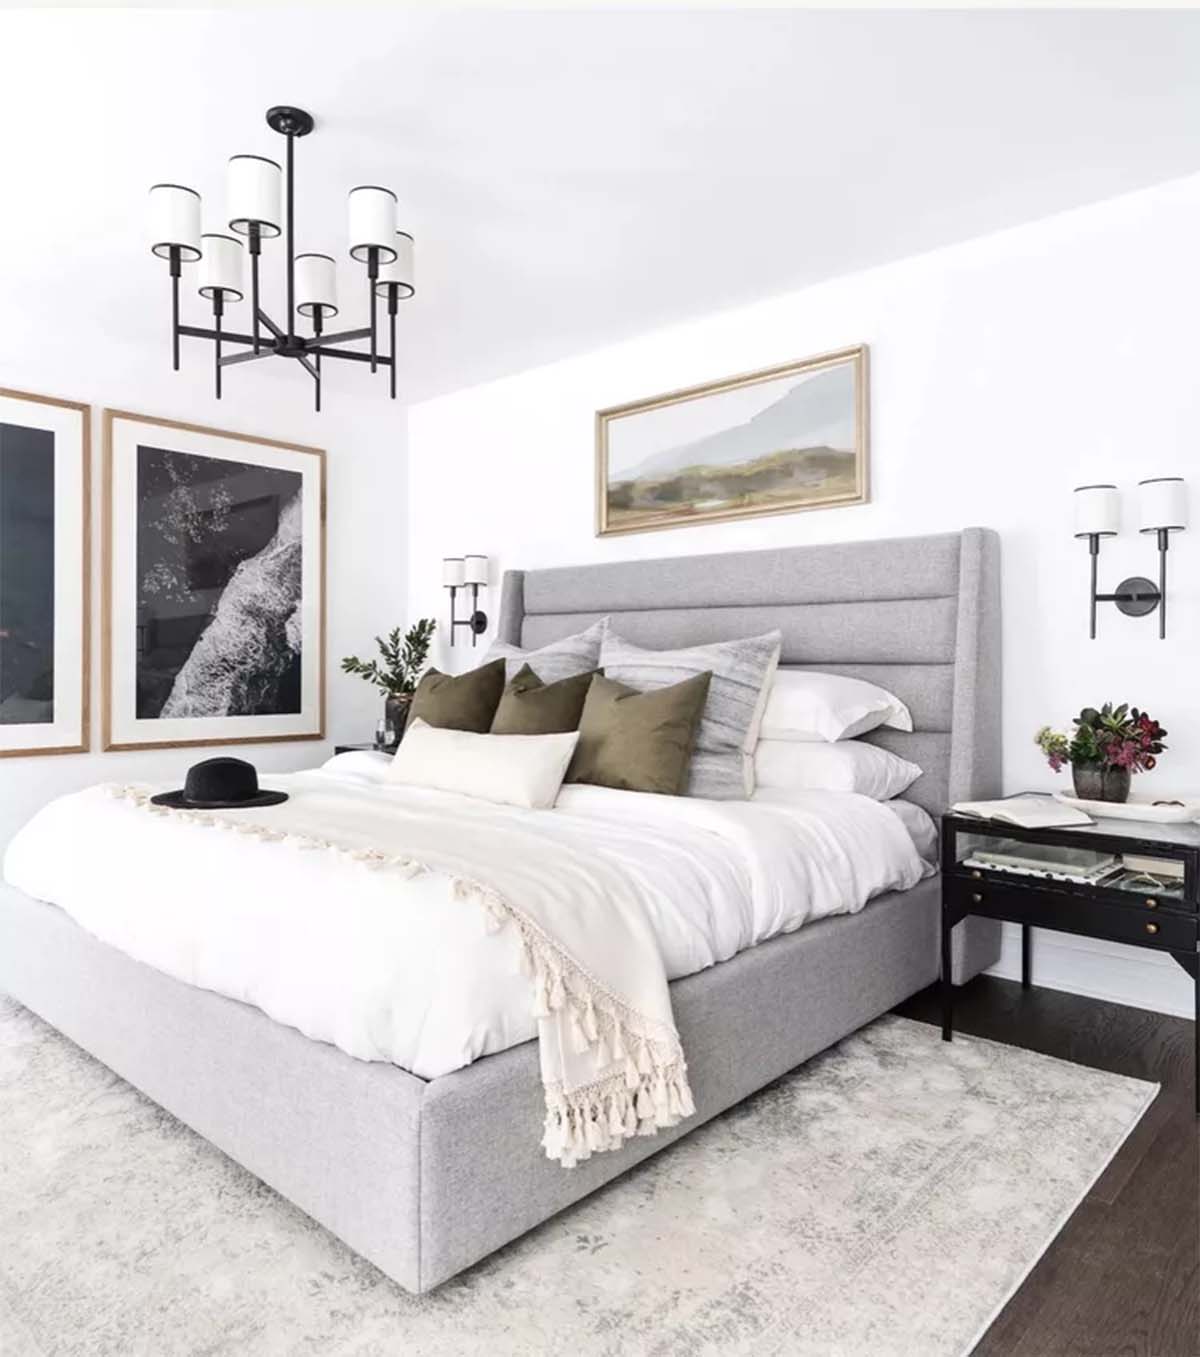 اتاق خواب طوسی سفید با تخت طوسی و دیوار سفید و کف چوبی و تابلوهای طرح دار